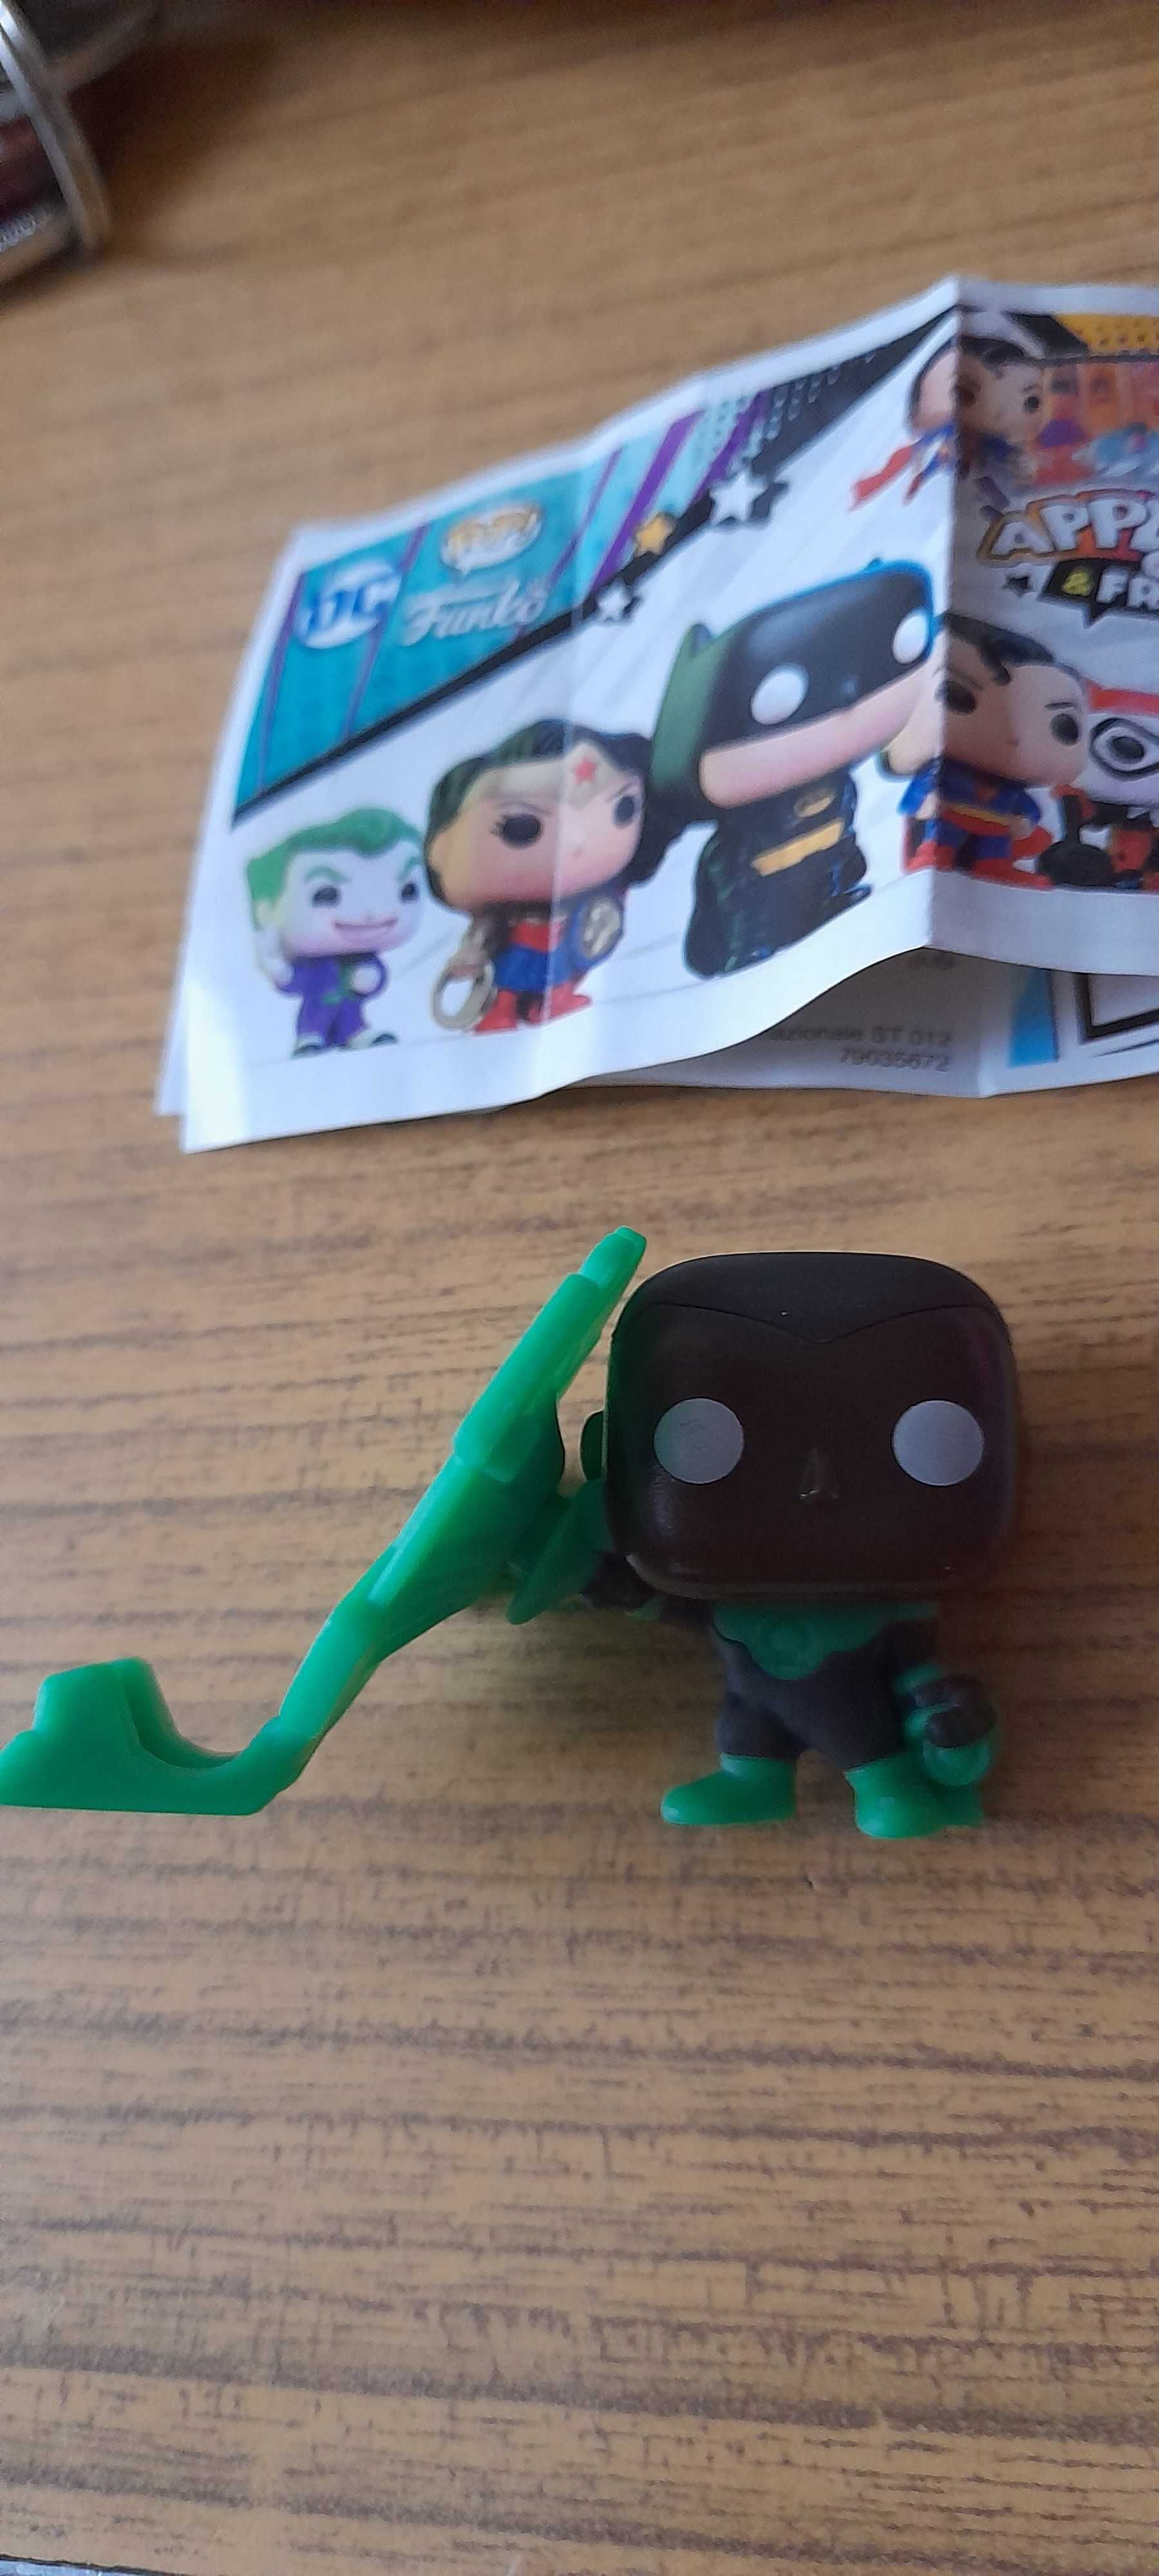 Figurka Green Lantern Funko pop kinder joy podstawka na telefon